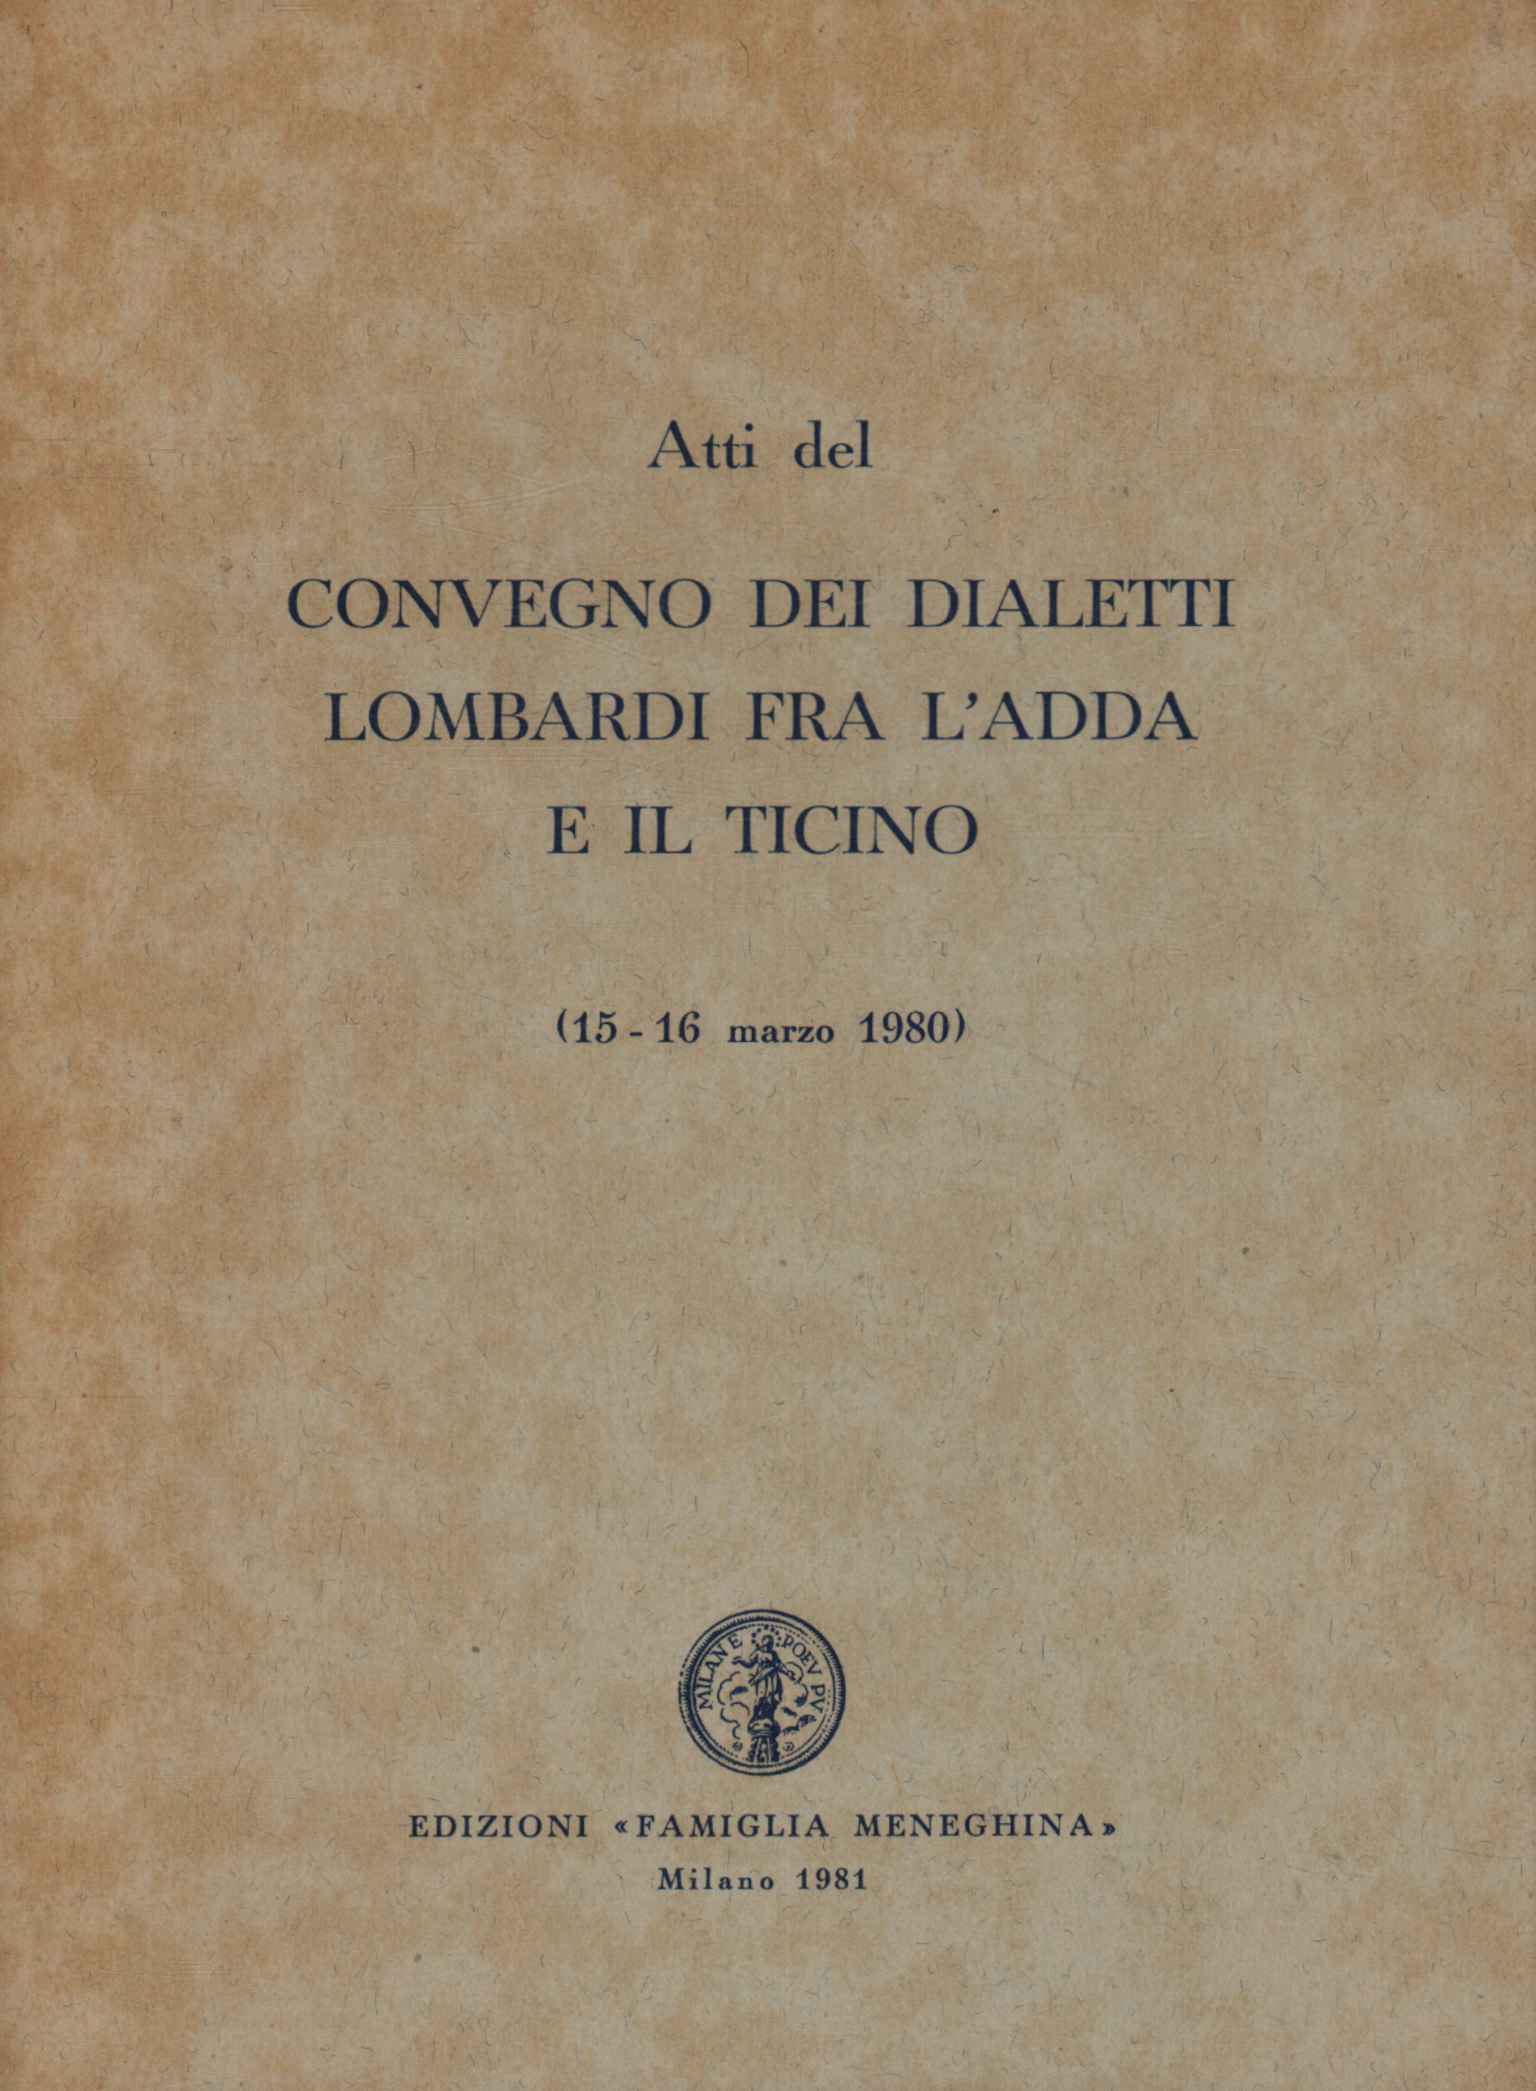 Conferencia de dialectos lombardos entre 1000 y 1900